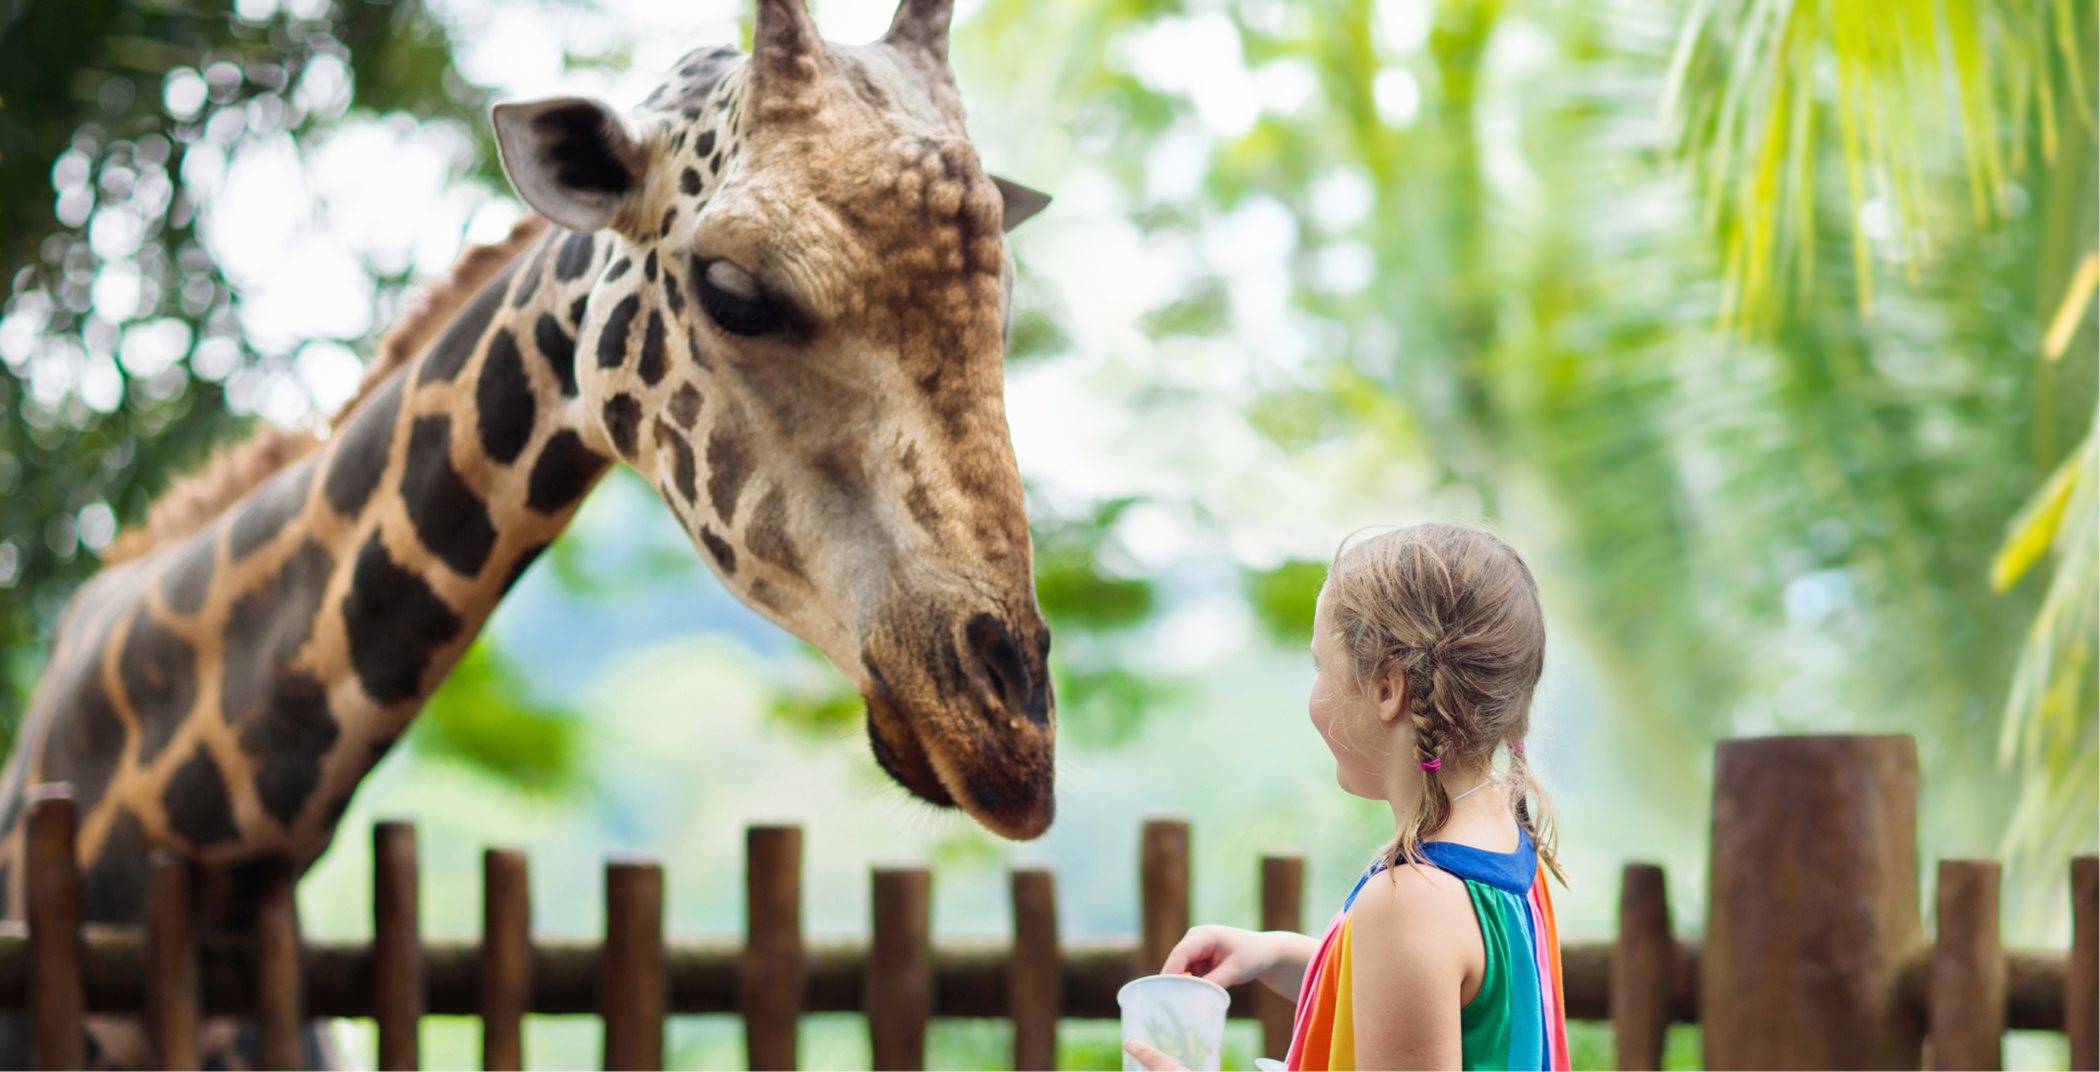 Little girl with a giraffe